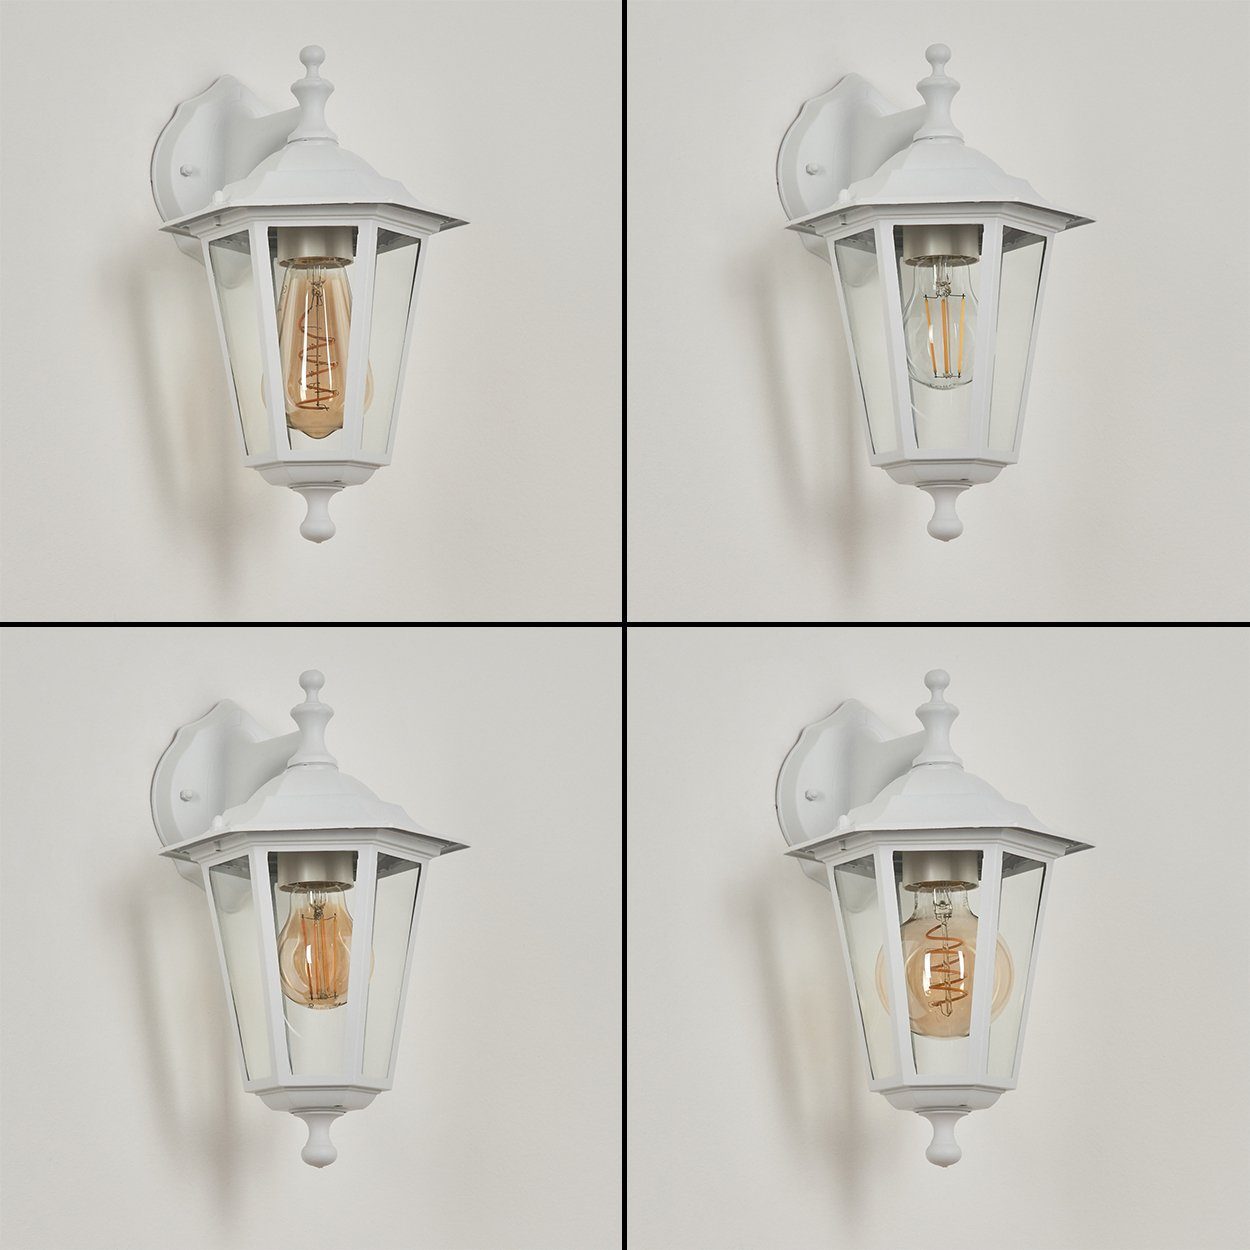 Metall/Glas Weiß/Klar, Abwärts aus »Albettone« Lichteffekt, E27, Leuchtmittel, hofstein IP44 Außenleuchte Vintage ohne Wandlampe in m. Außen-Wandleuchte